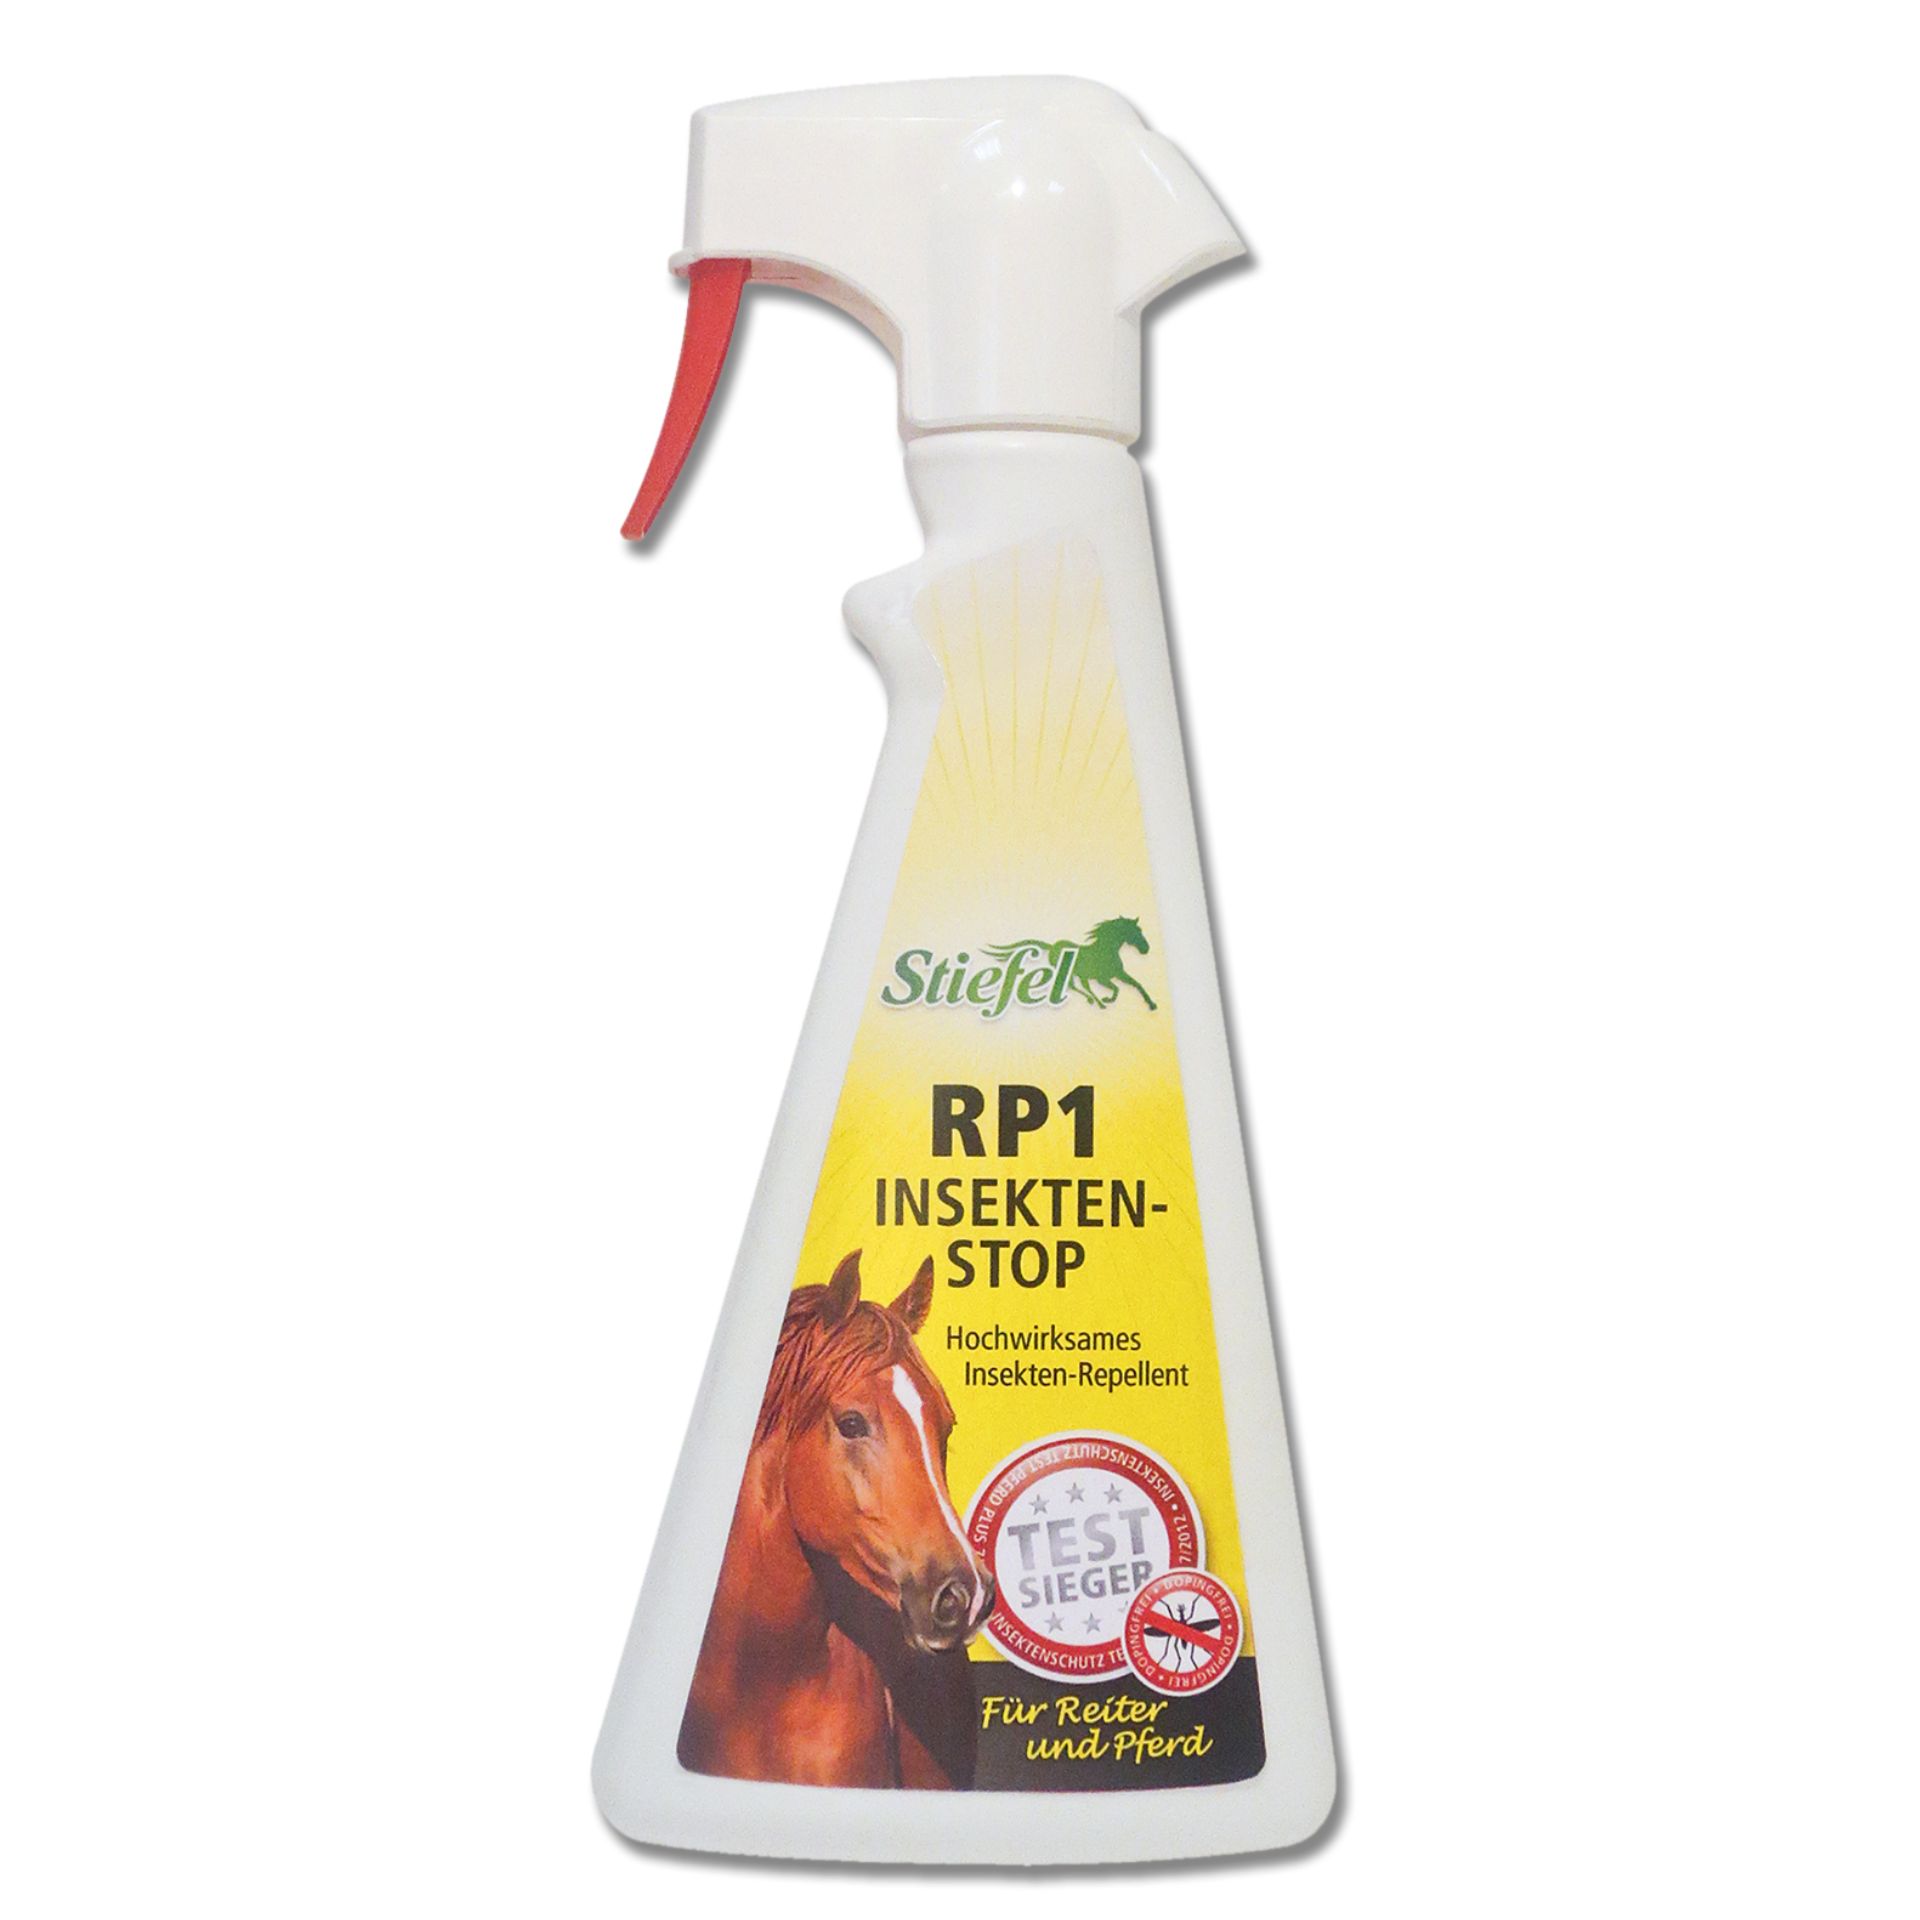 Stiefel Insektenschutz RP1-Spray, 500 ml Flasche mit Sprüher